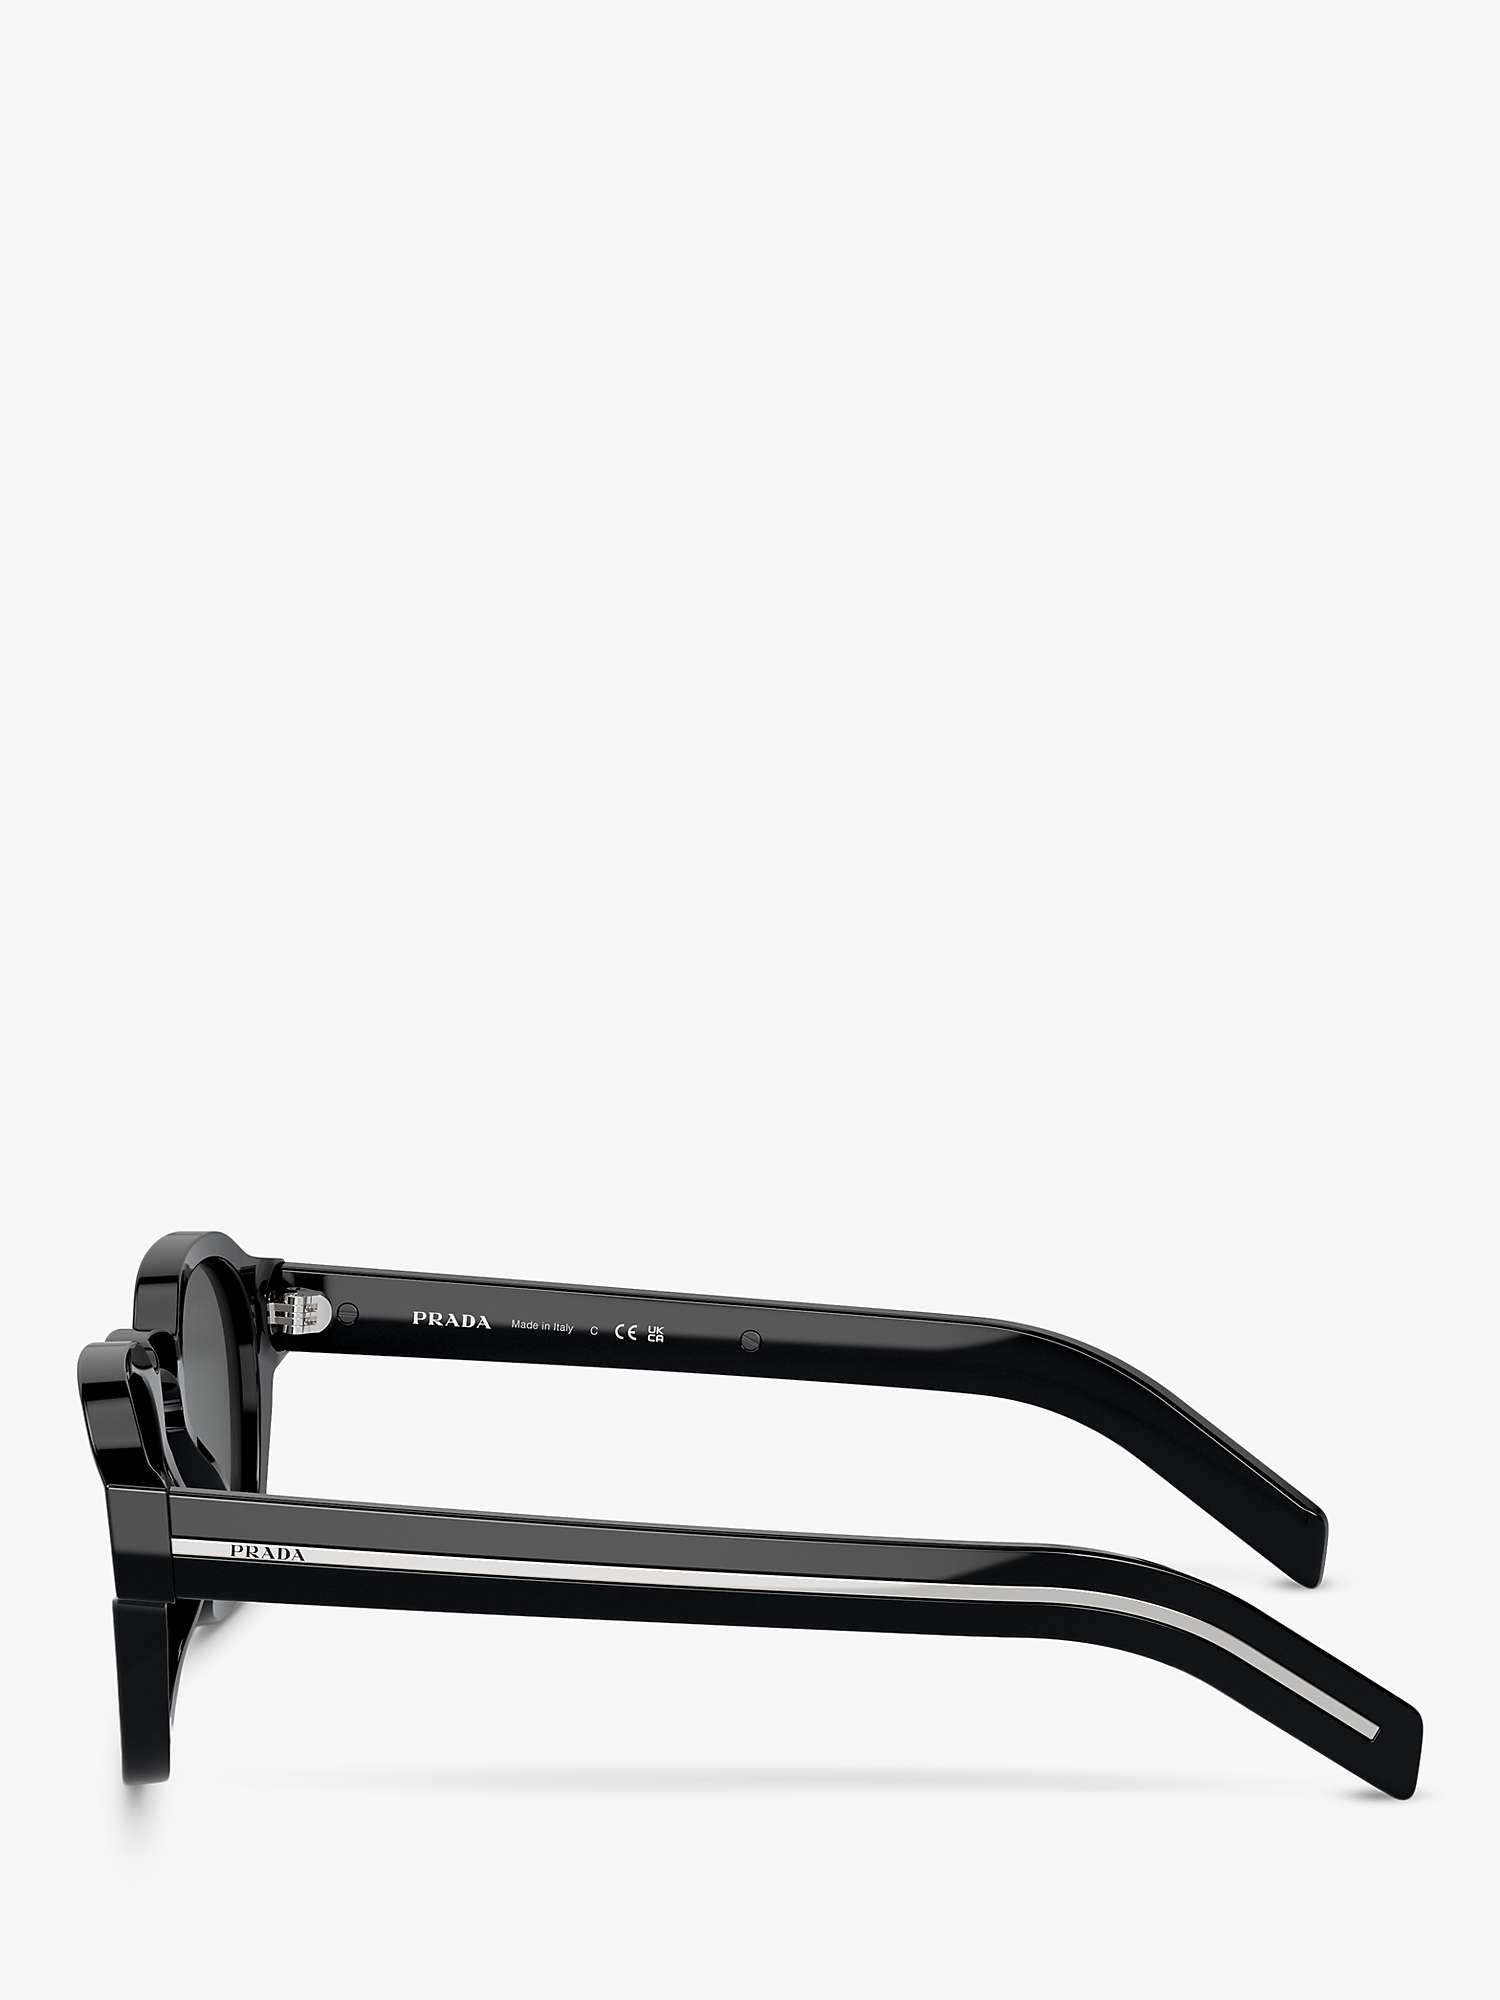 Buy Prada PR A16S Men's Phantos Sunglasses, Black/Grey Online at johnlewis.com